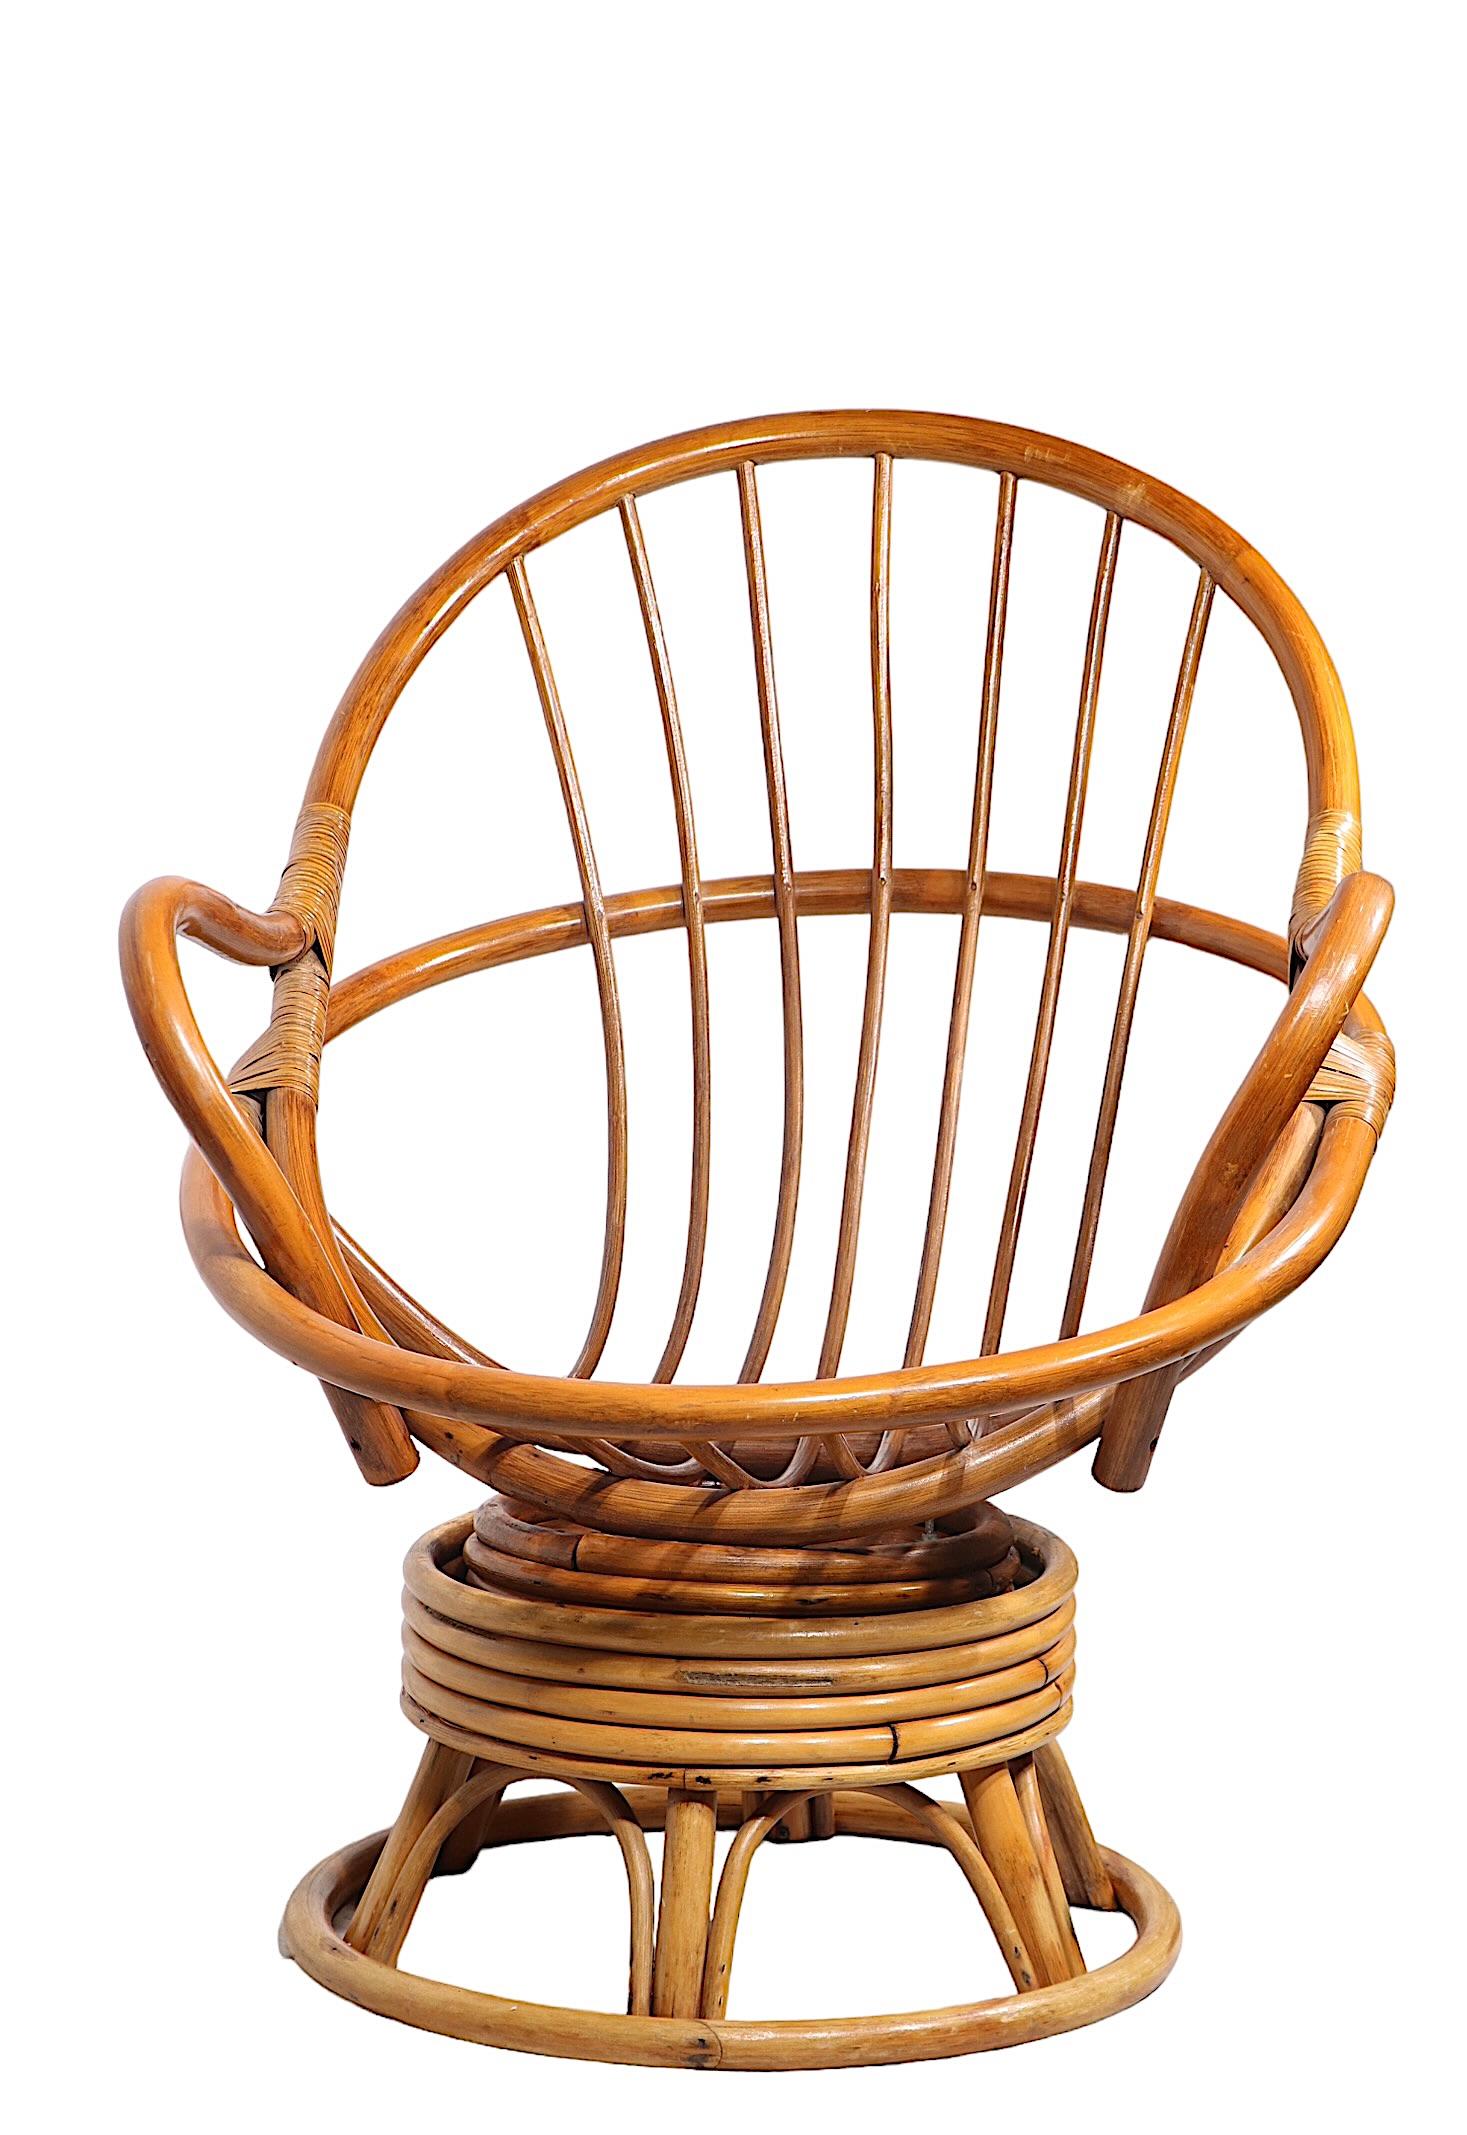 Chaise de salon moderne en bambou, pivotante et inclinable, sur socle. La chaise est en très bon état, d'origine, propre, sans coussin.
 Total H 37 x Accoudoir H 27.5 x Siège H 17 x L 30.5 x P 32.5 pouces